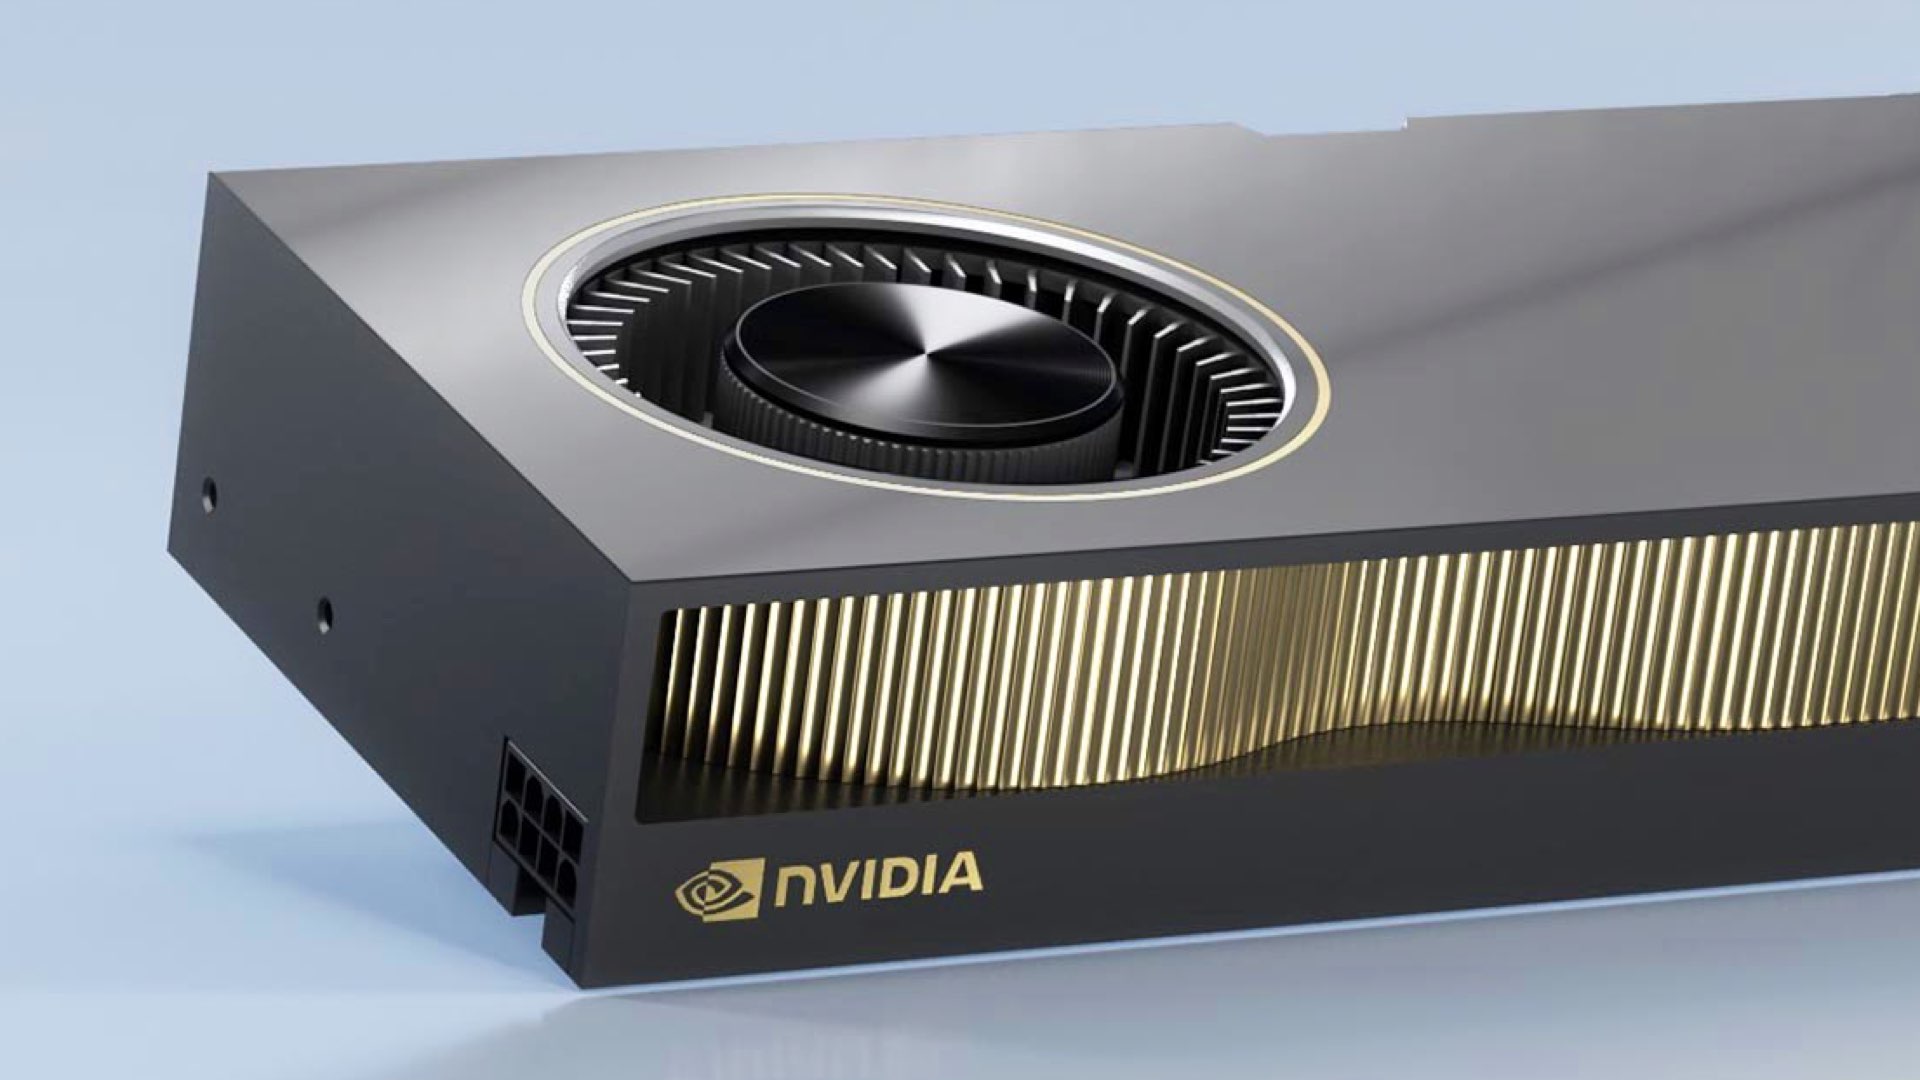 NVIDIA RTX A6000 GPU